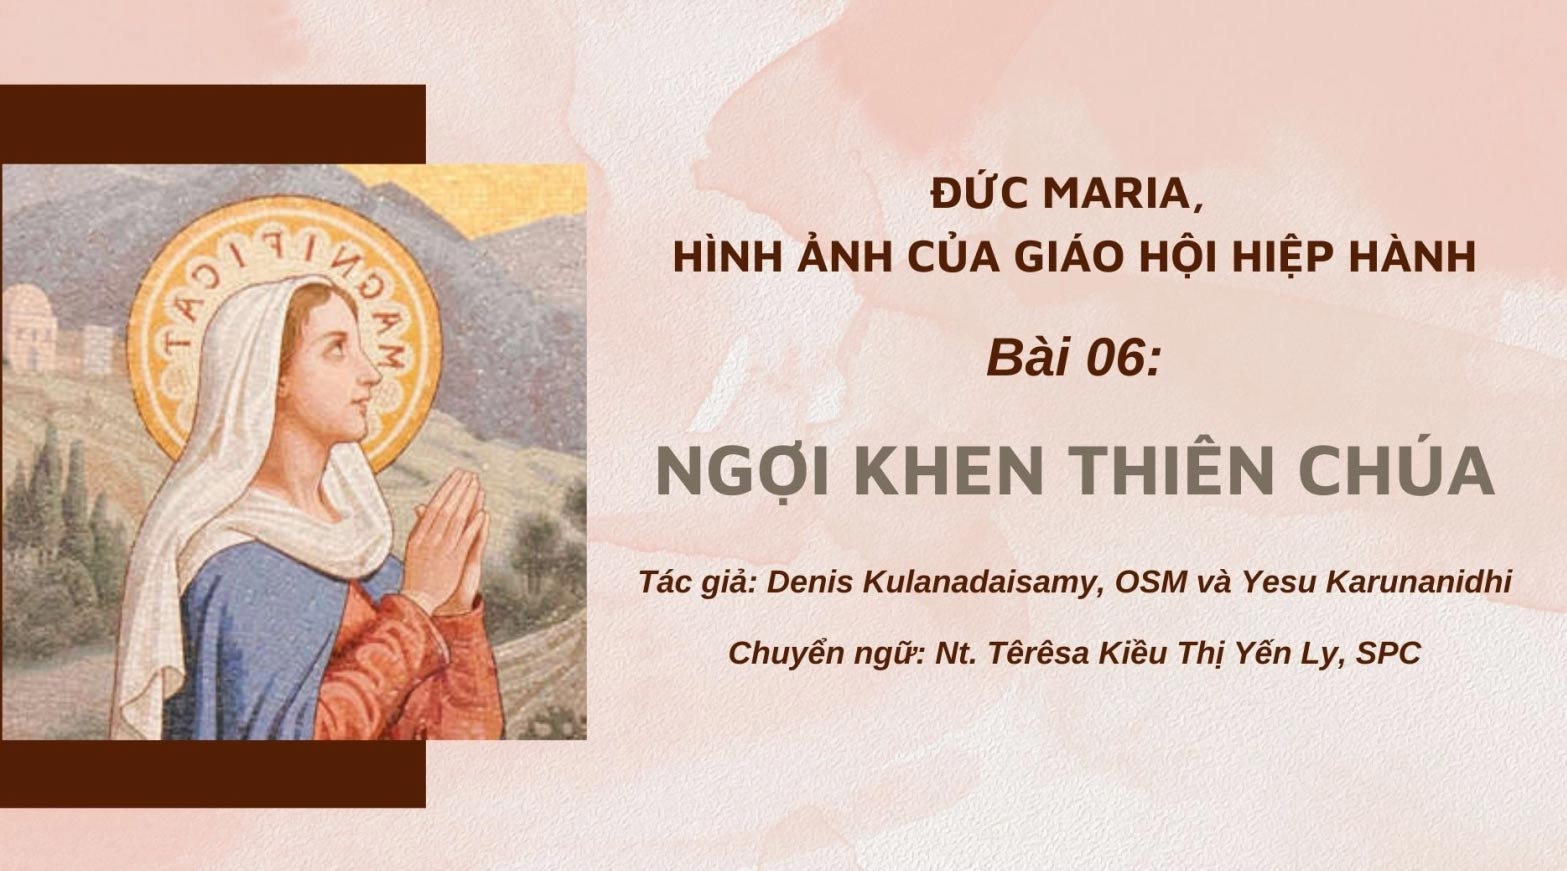 Đức Maria, hình ảnh của Giáo Hội hiệp hành: bài 06 - ngợi khen Thiên Chúa